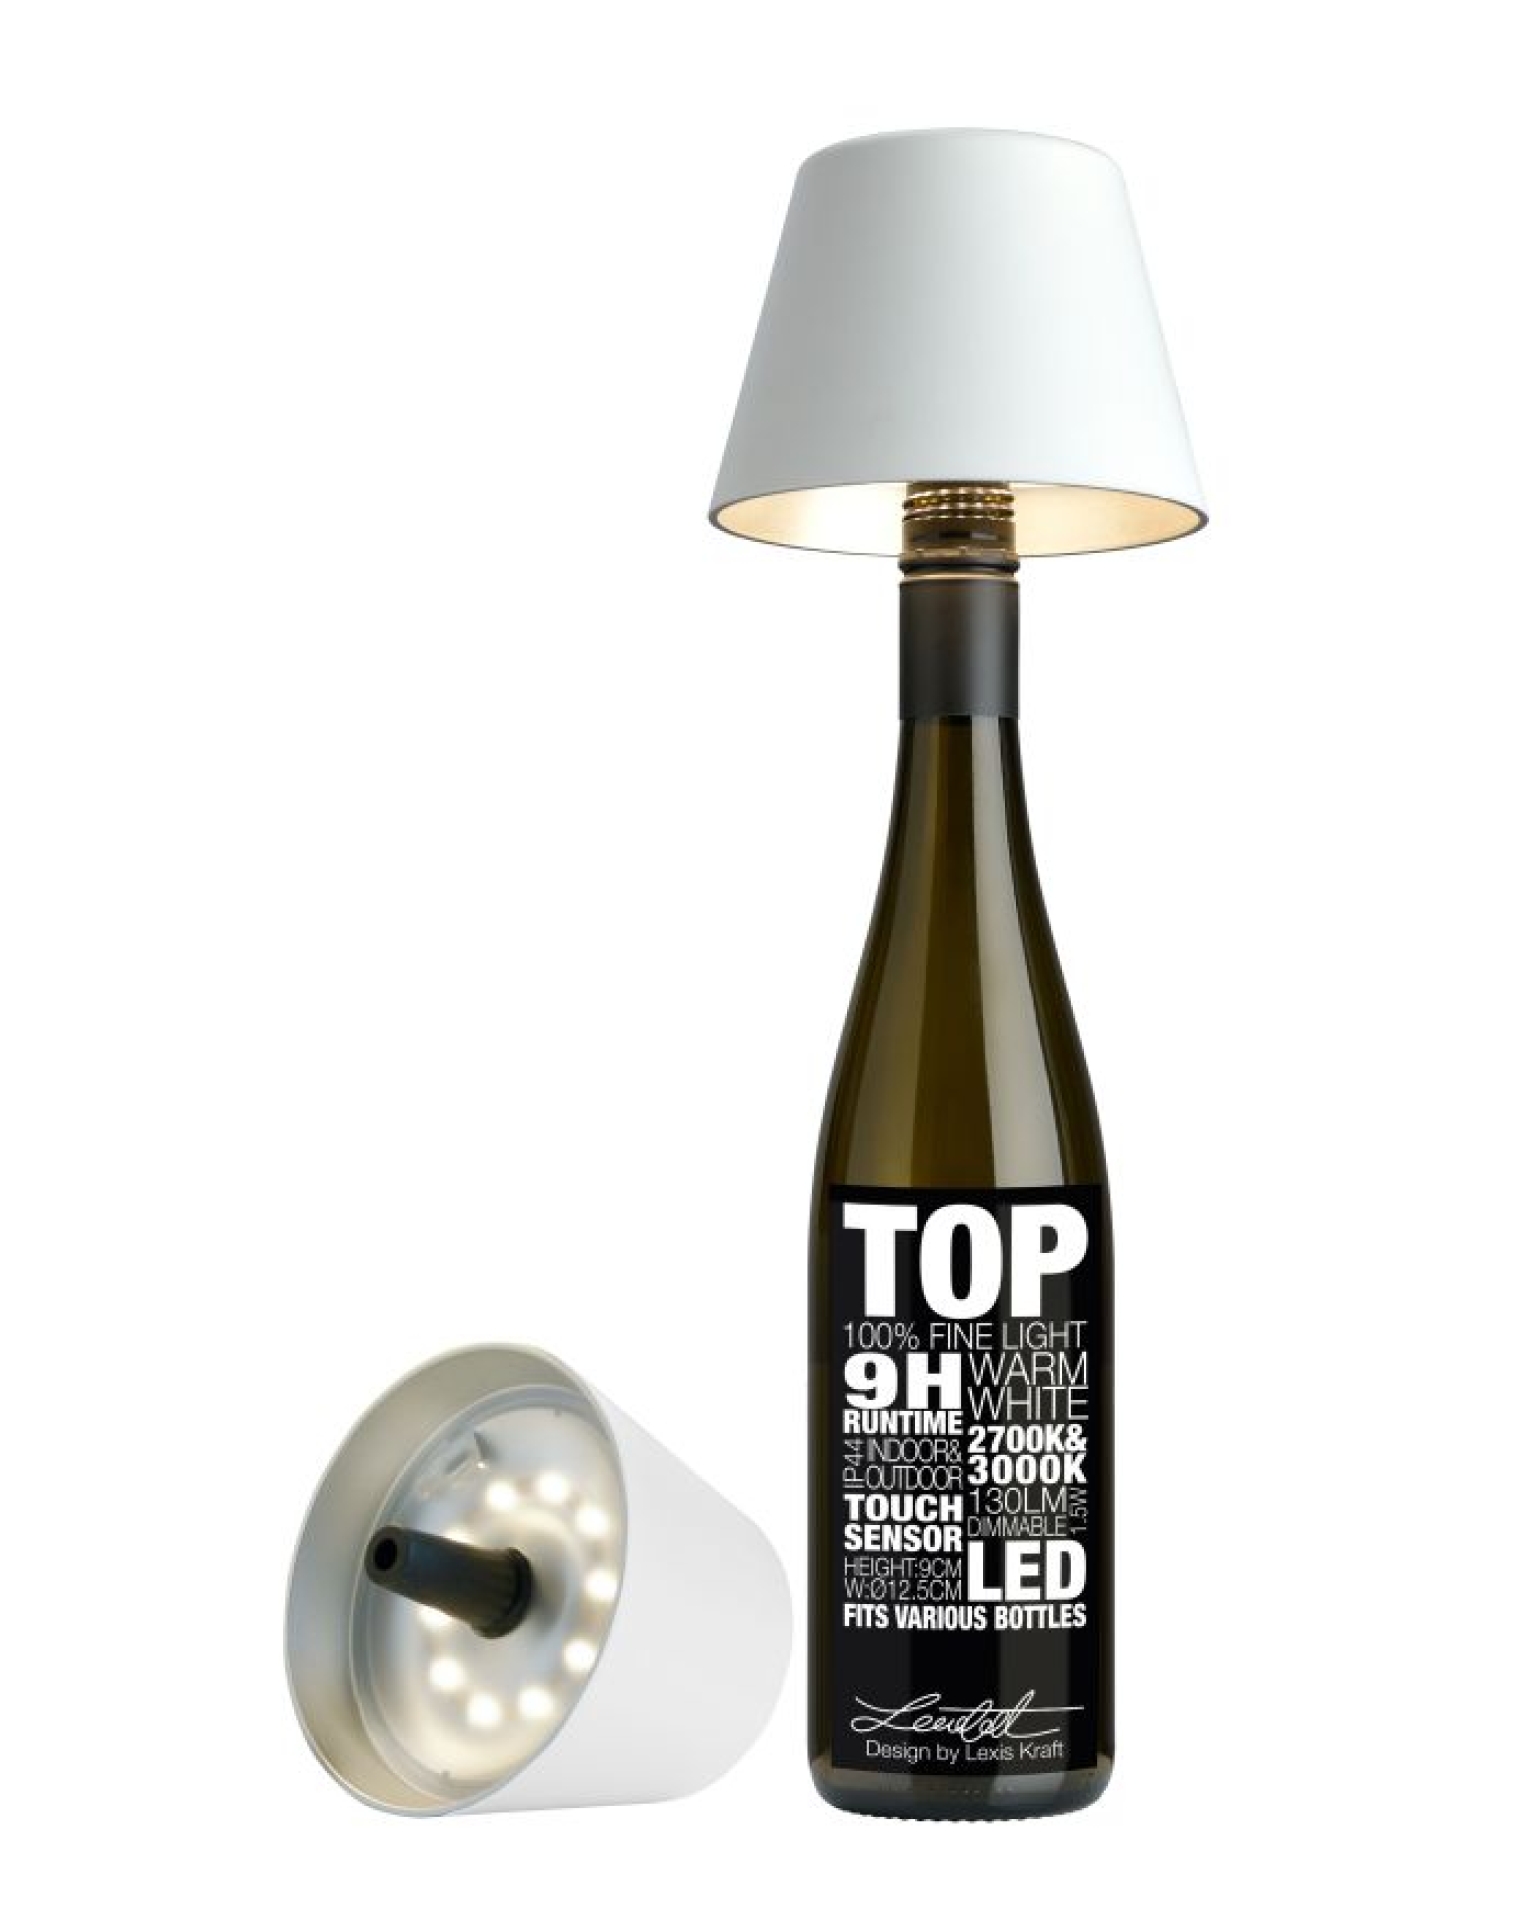 SOMPEX - TOP Akku-Flaschenleuchte in Weiß, dimmbar, 2 Lichtfarben, 1,5W LED